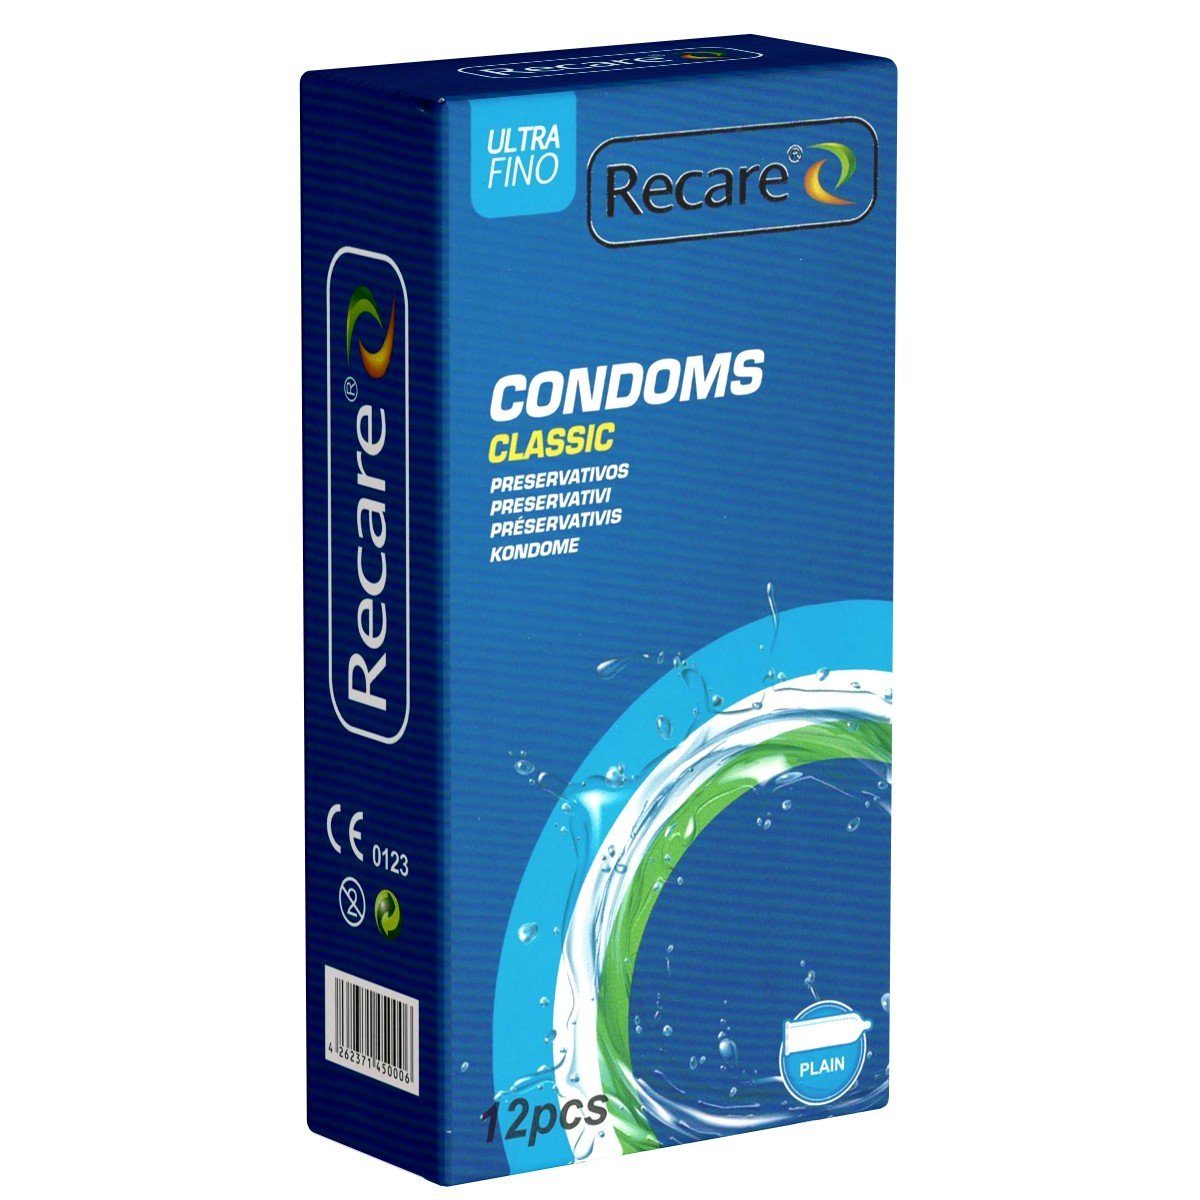 Recare Kondome Classic - sichere Kondome Packung mit, 12 St., Kondome für einen gefühlvollen Liebesakt